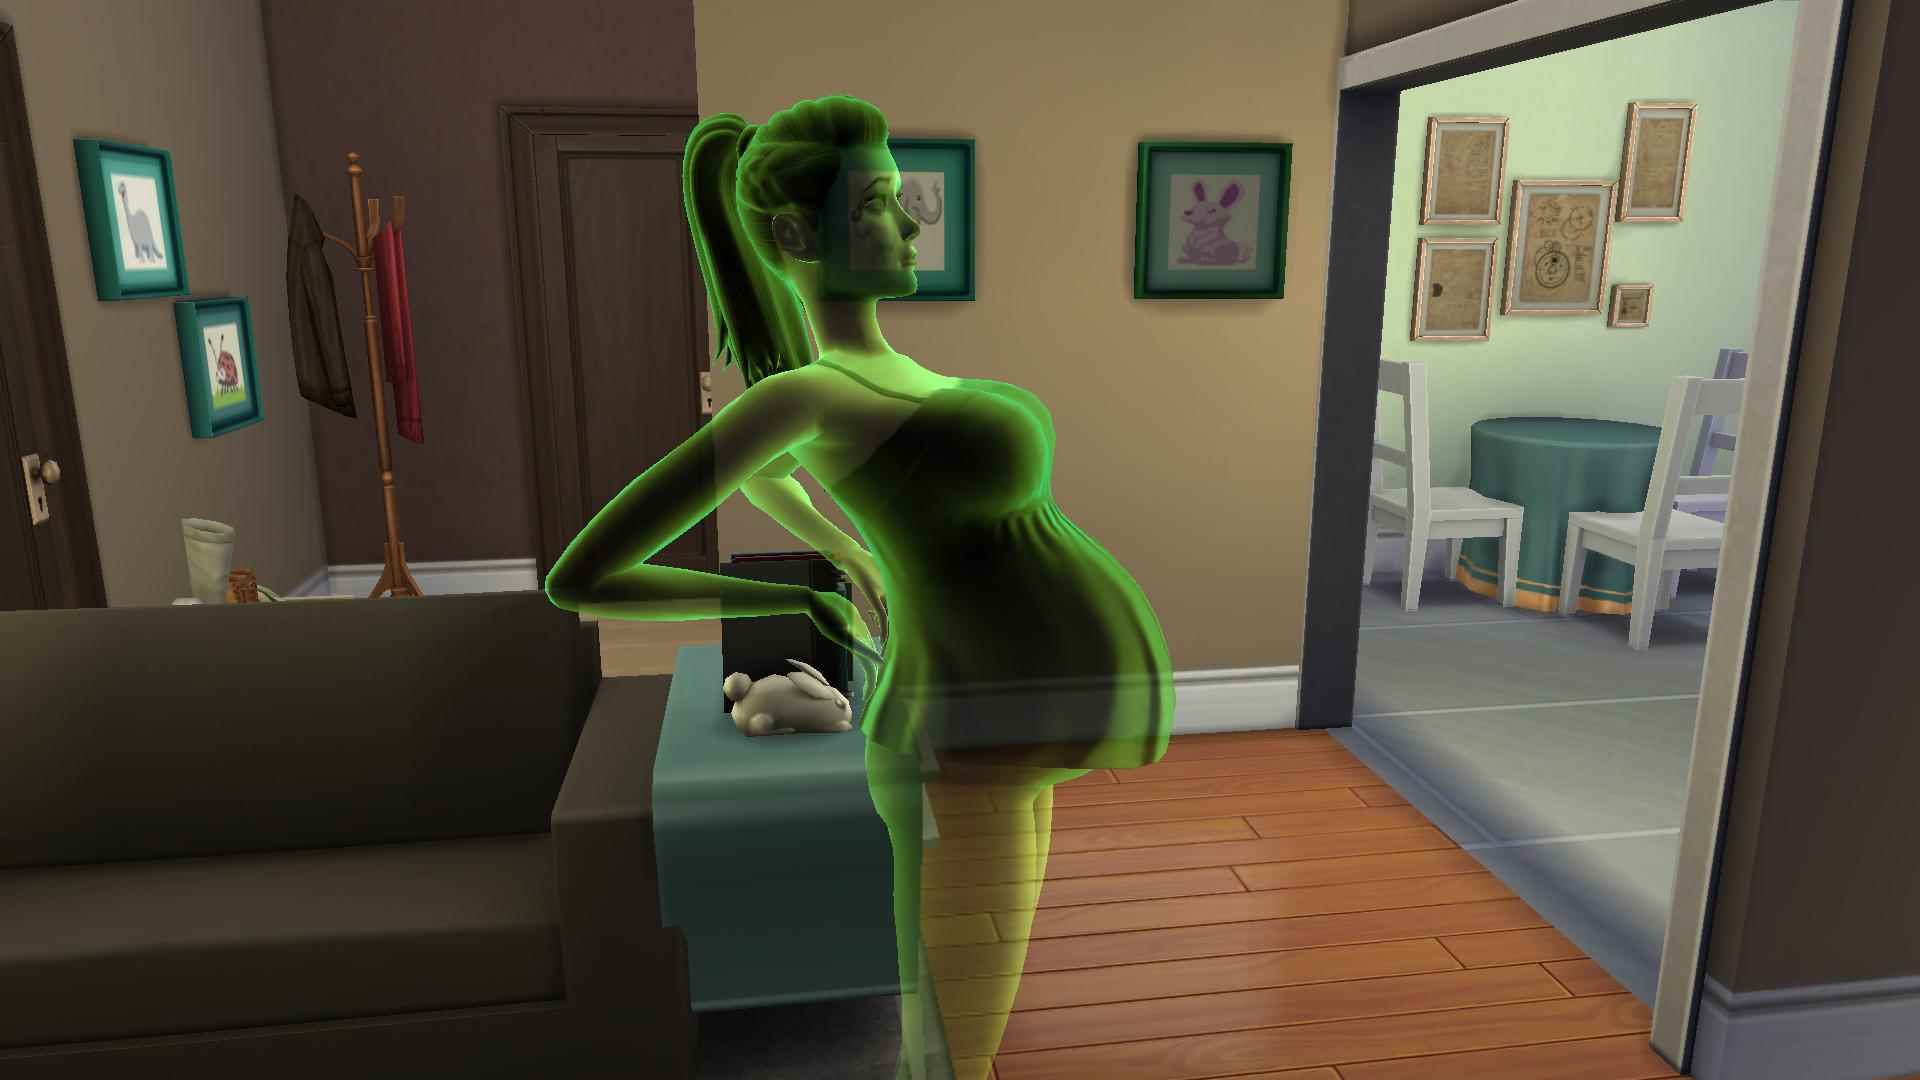 Yeşil şeffaf bir dişi Sims sims 4 seks modunda gözle görülür şekilde hamile Hayaletler bebek sahibi olabilir!